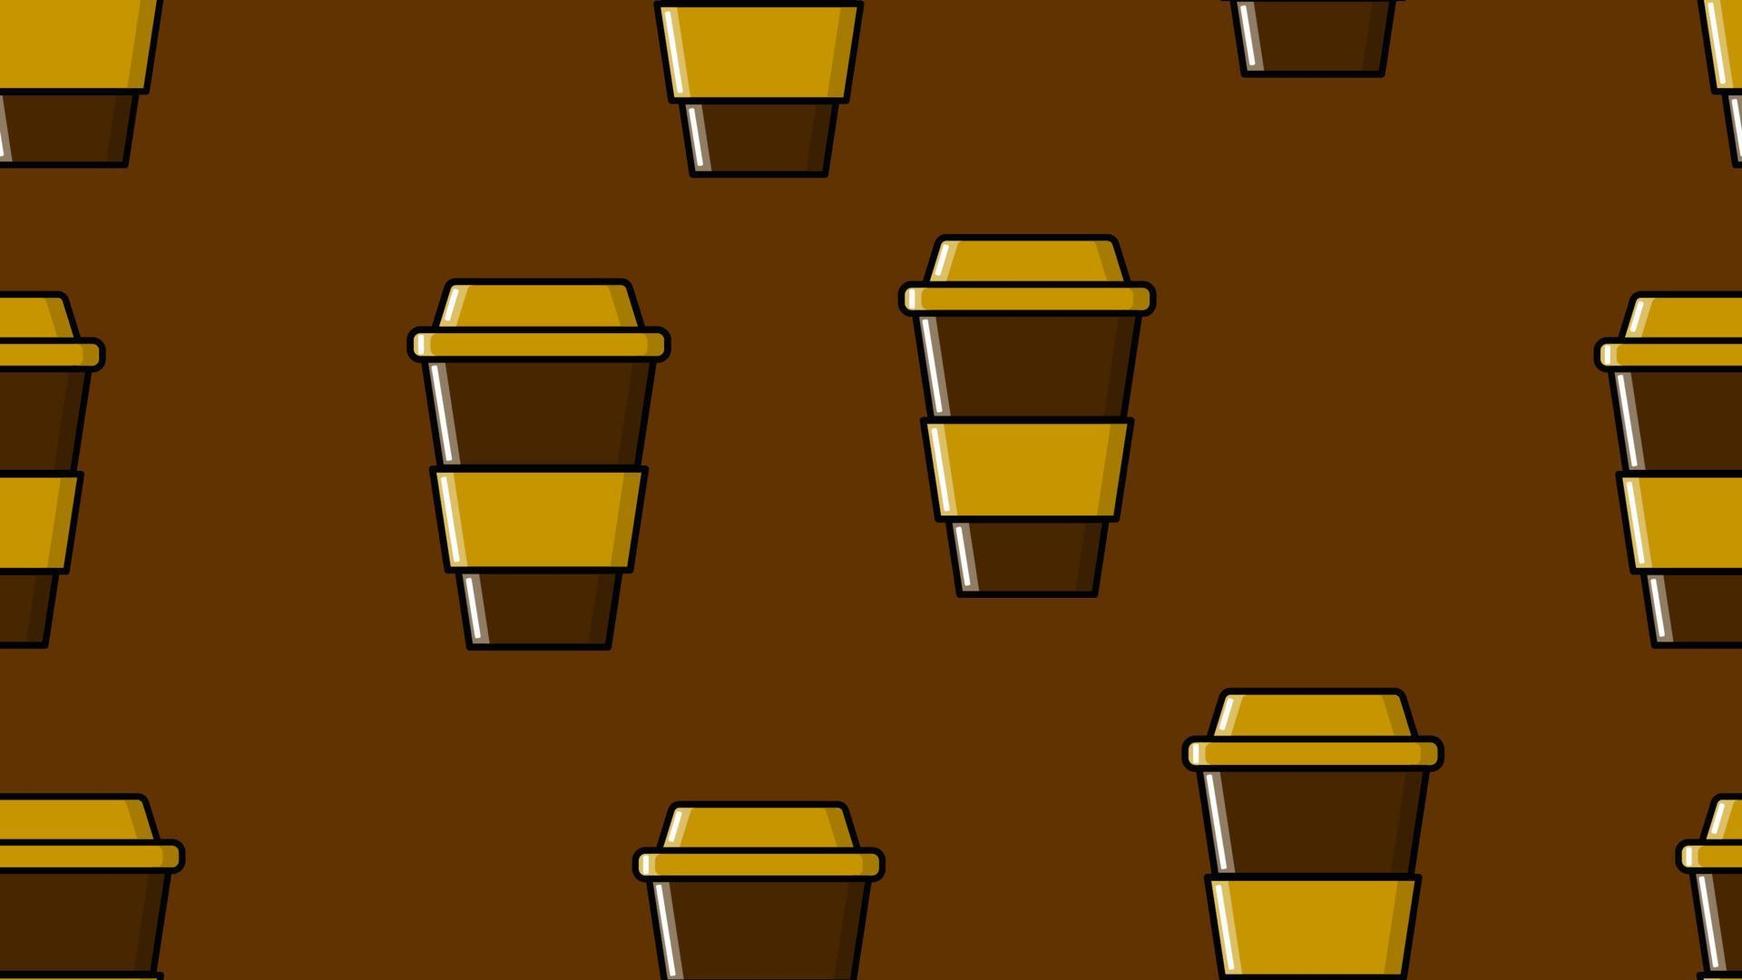 motif harmonieux de verres répétitifs avec un café expresso americano revigorant et chaud rapide dans une tasse en carton à emporter sur fond marron. illustration vectorielle vecteur